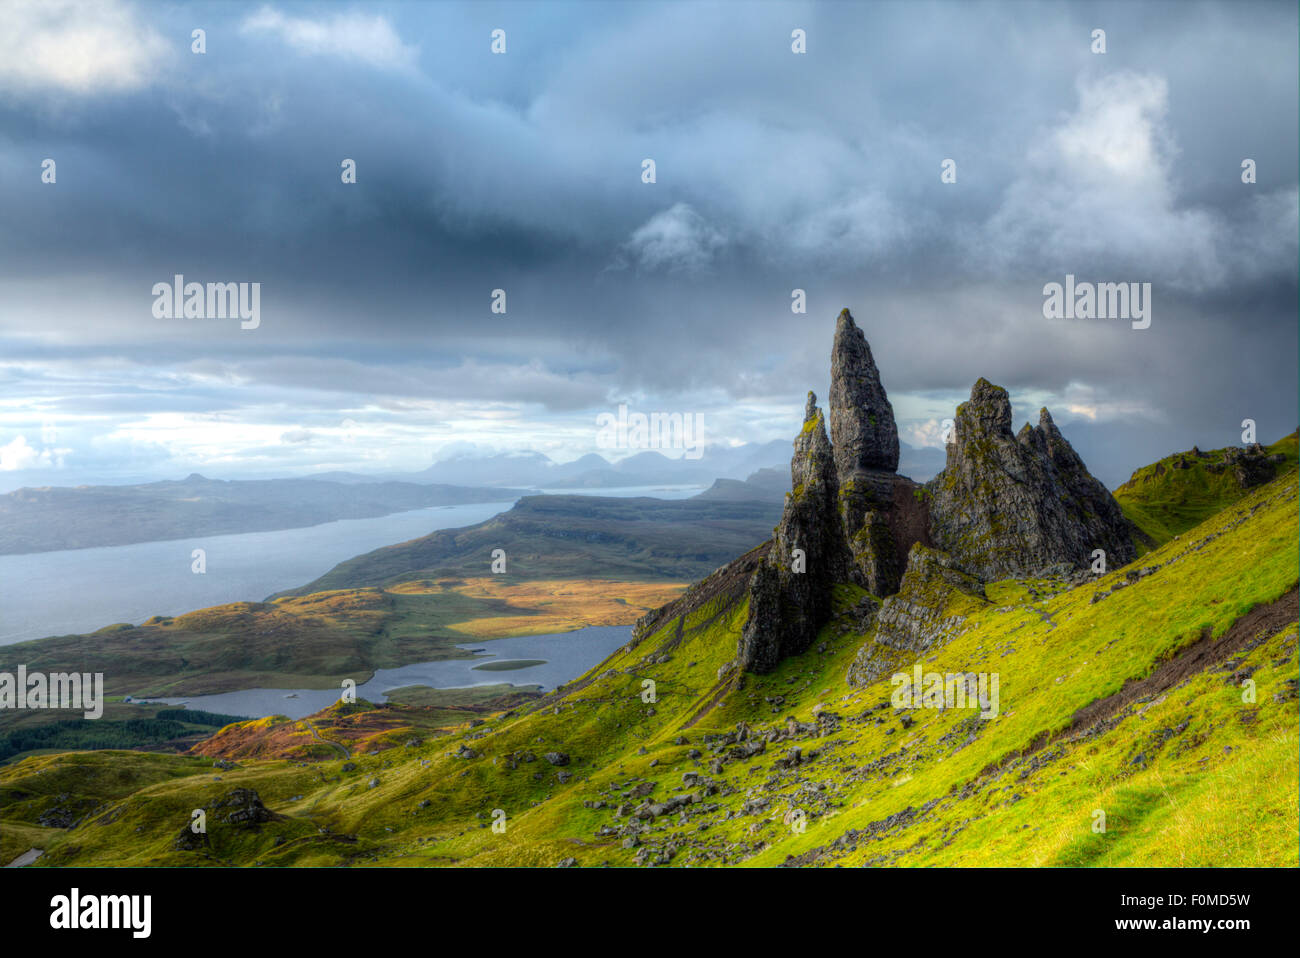 Il vecchio uomo di Storr rocce di Trotternish Ridge nella regione a nord di Isola di Skye che mostra il Loch Leathan lago, il suono interno stretto e l'isola di Raasay Foto Stock